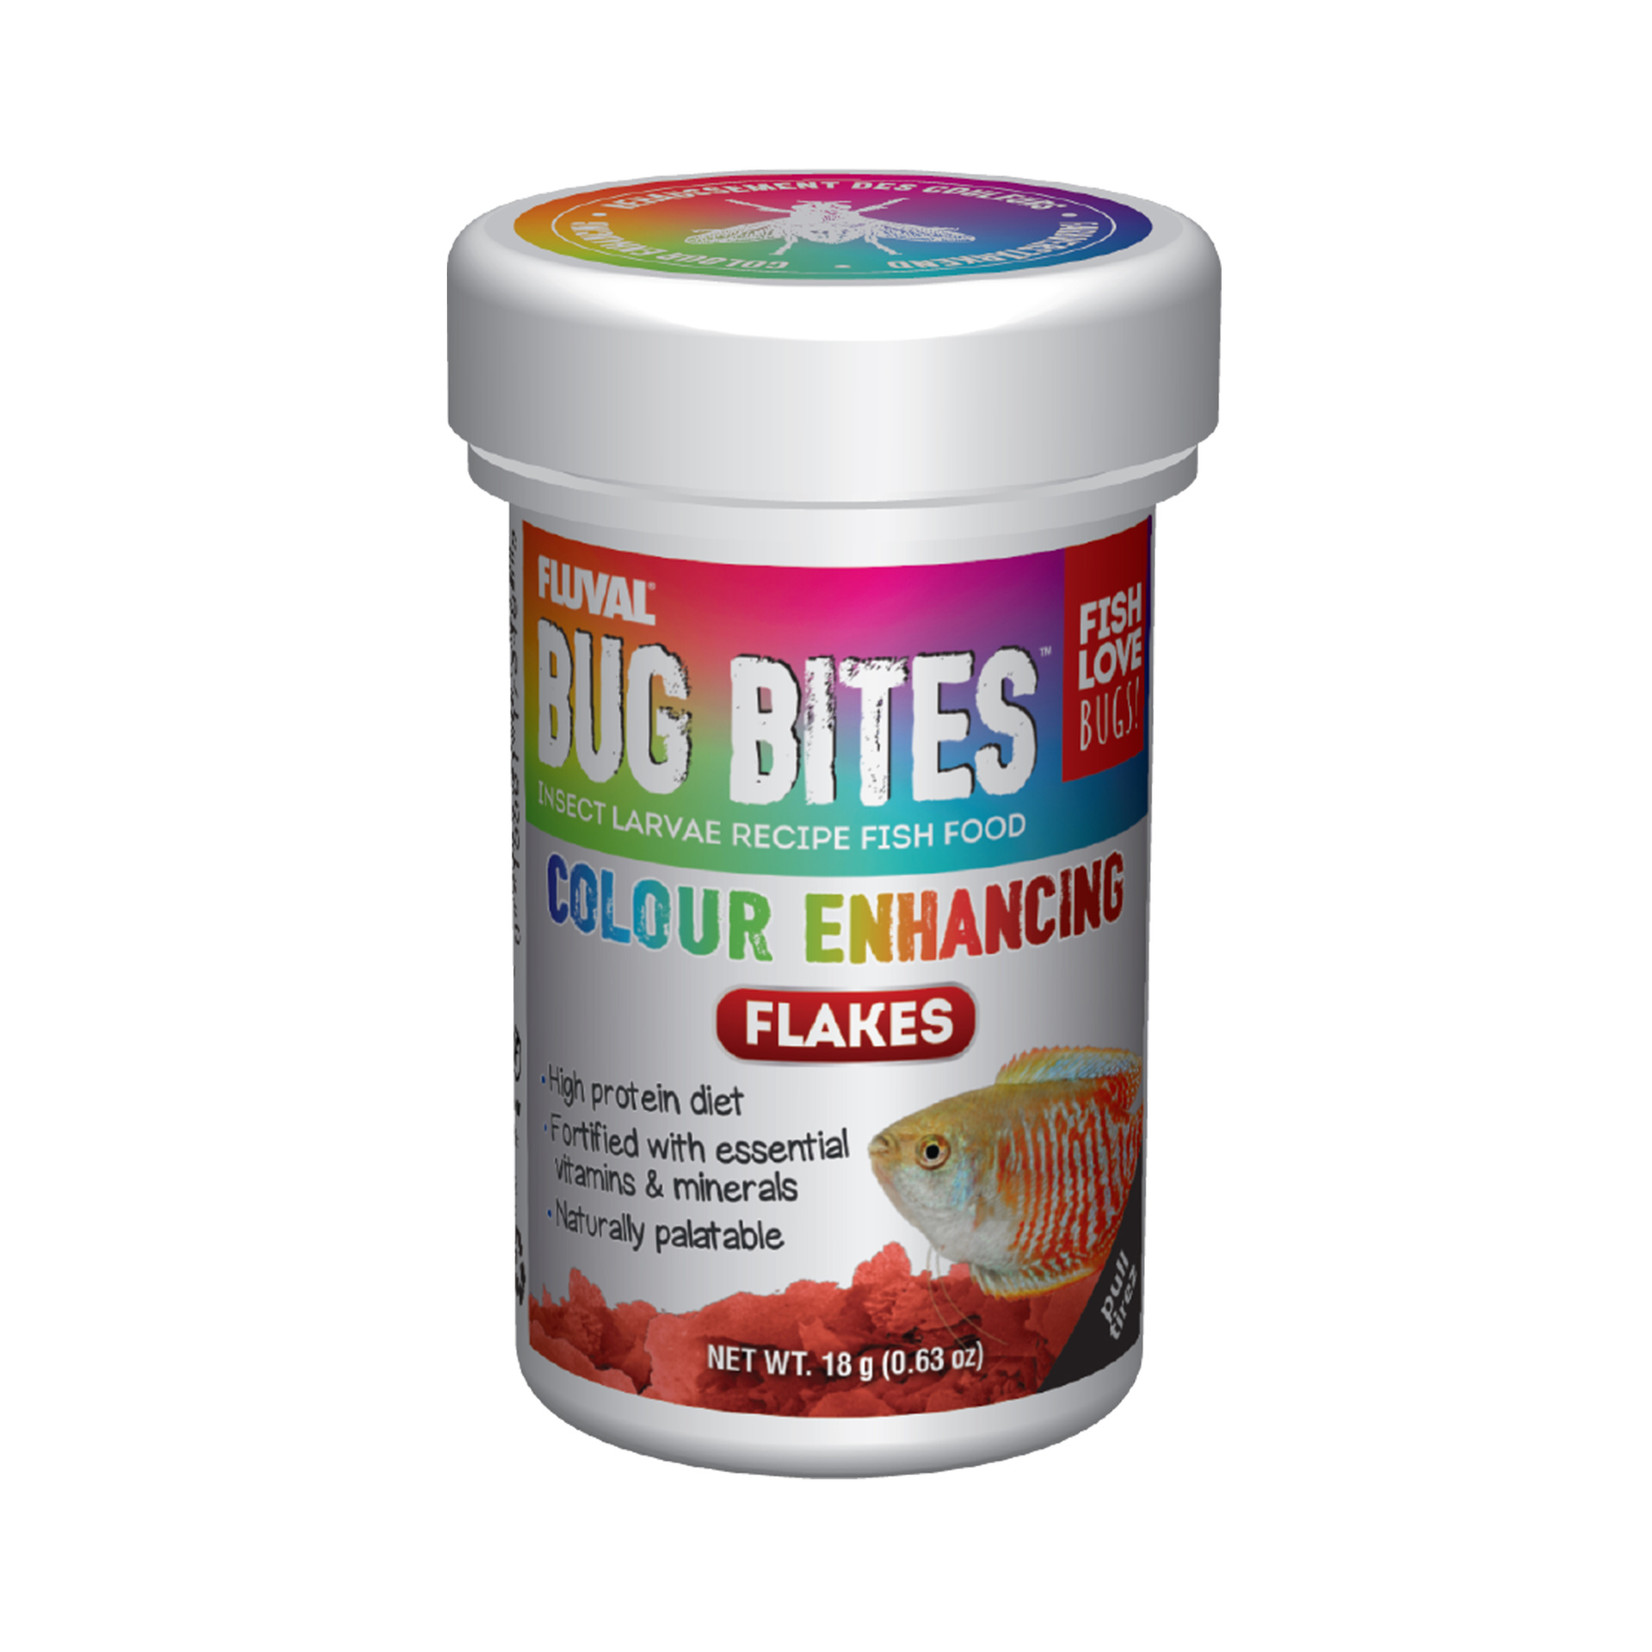 FLUVAL Fluval Bug Bites Color Enhancing Flakes, 18 g